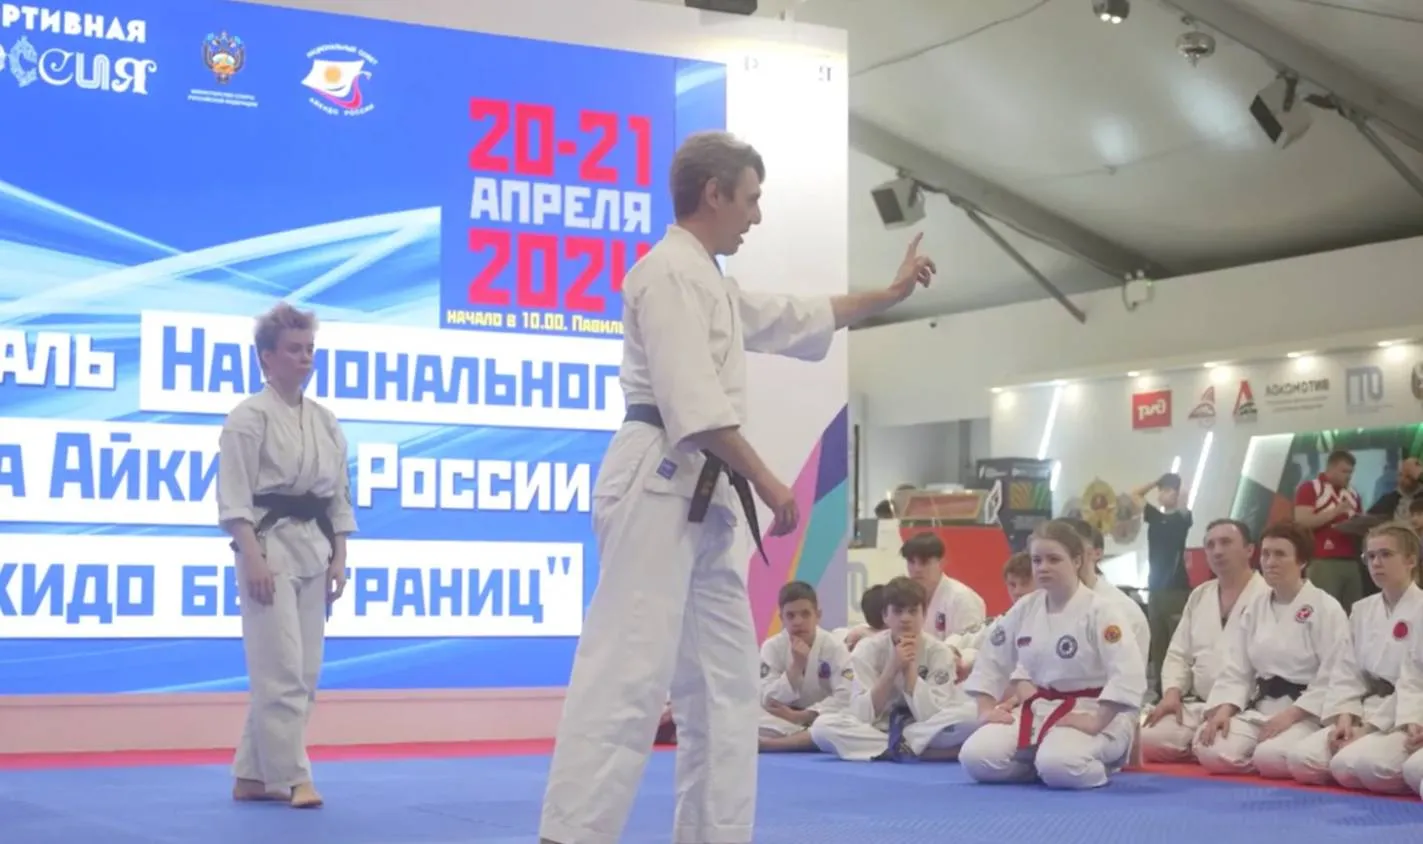 На выставке Россия стартовал спортивный фестиваль Айкидо без границ